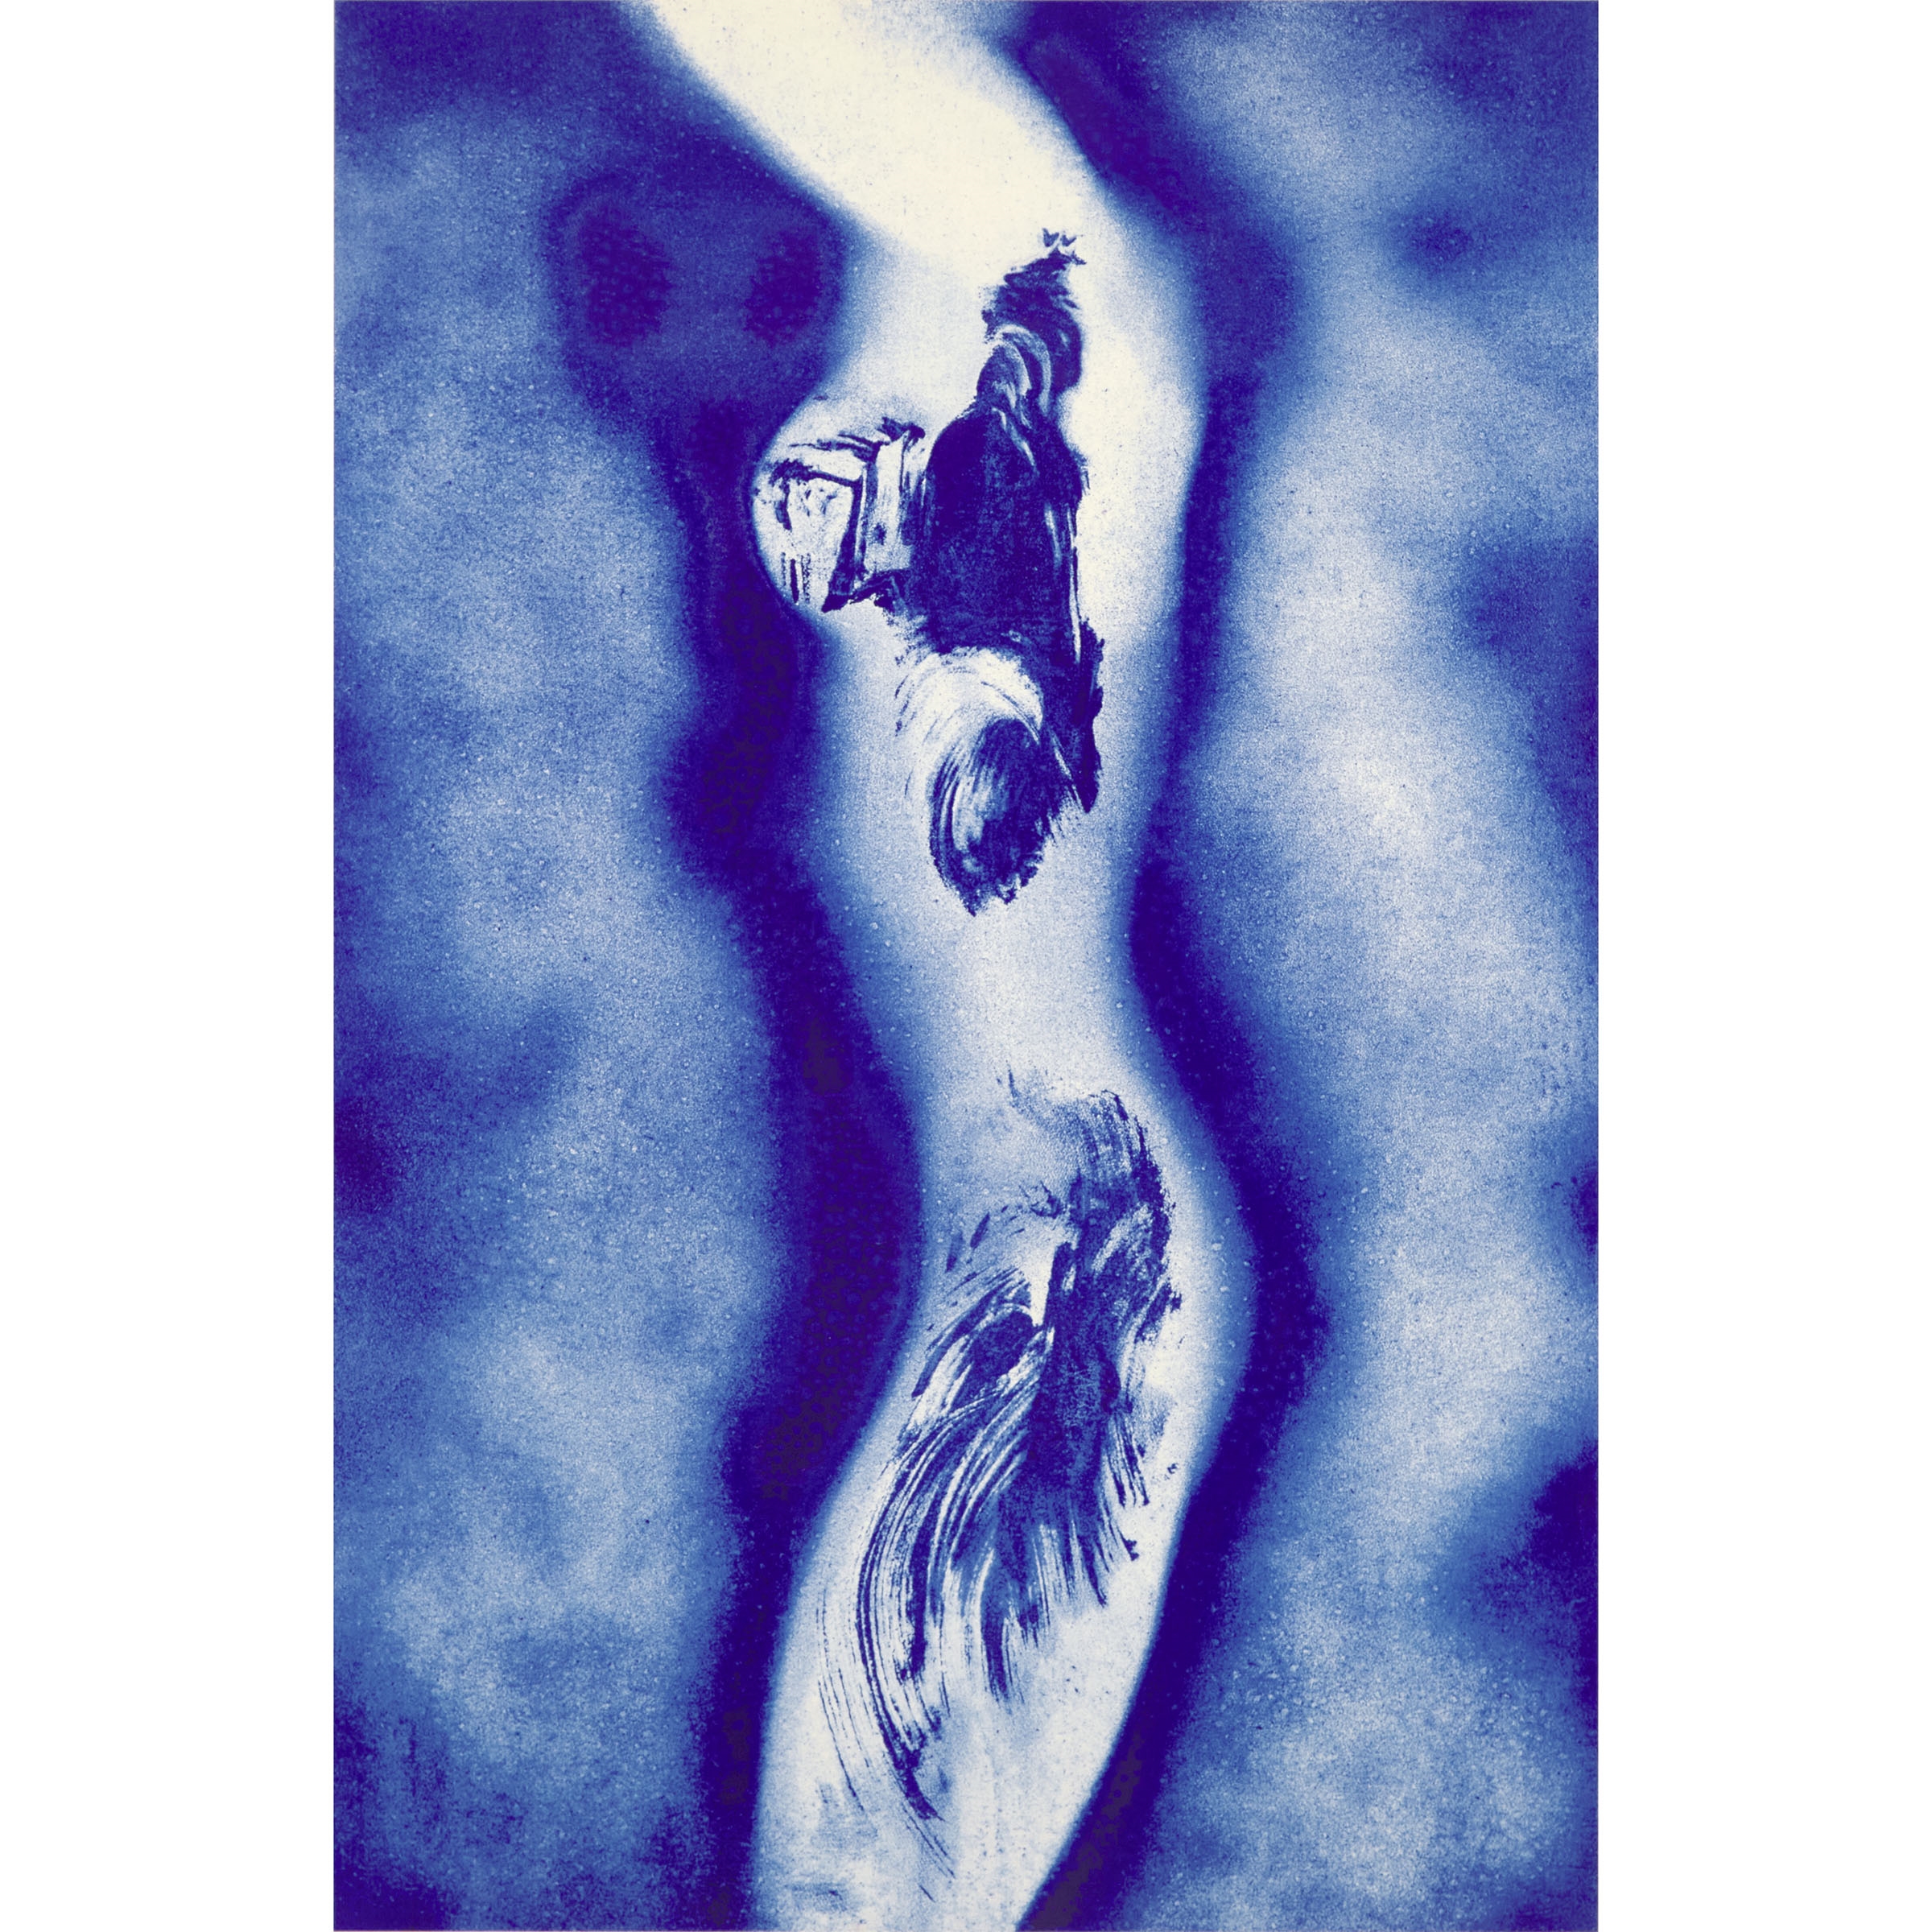 ANTHROPOMETRIE, ANT 148, 1960-2001 - Yves Klein